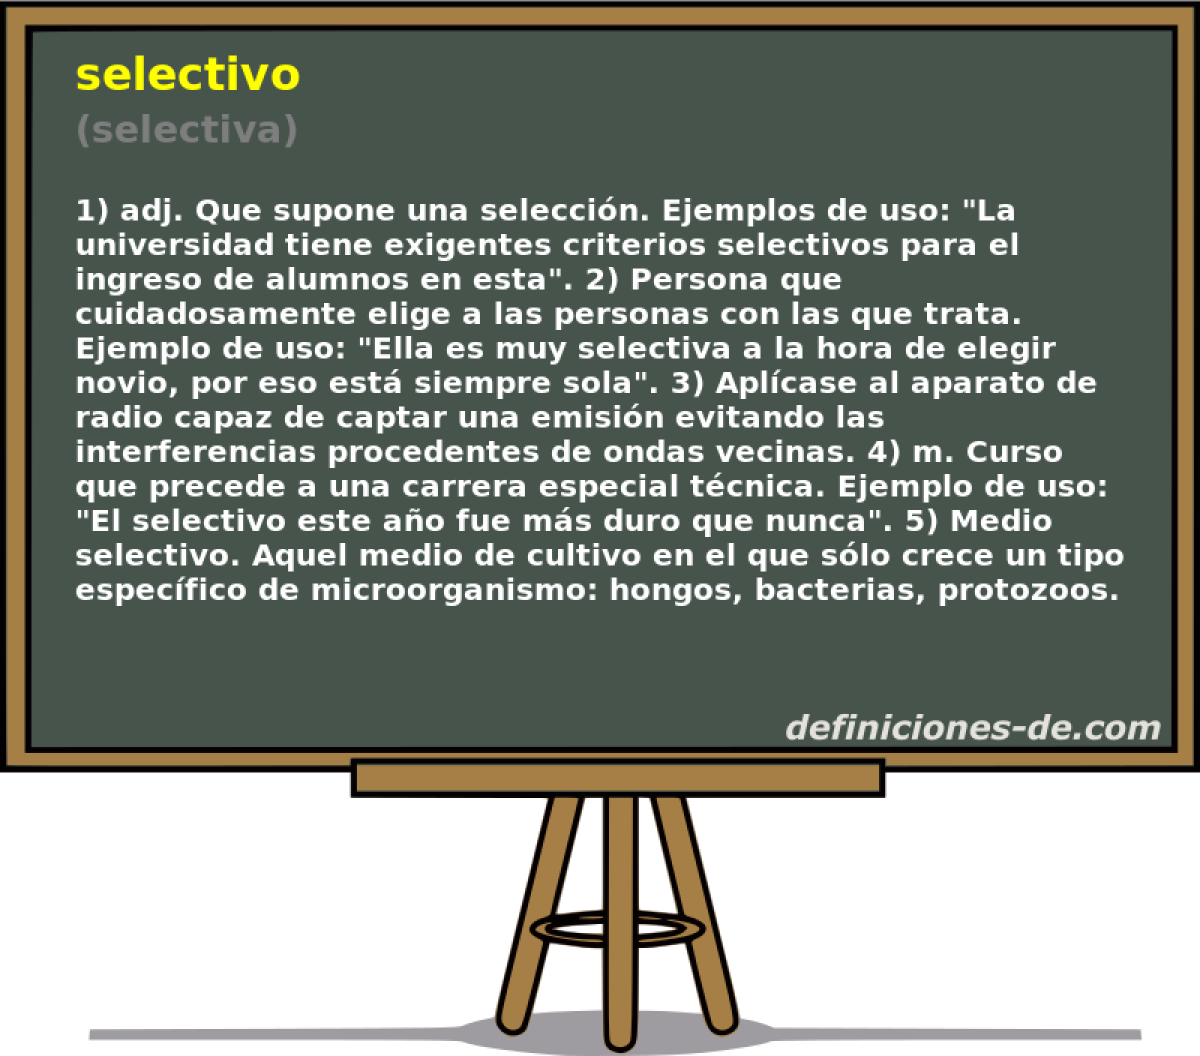 selectivo (selectiva)